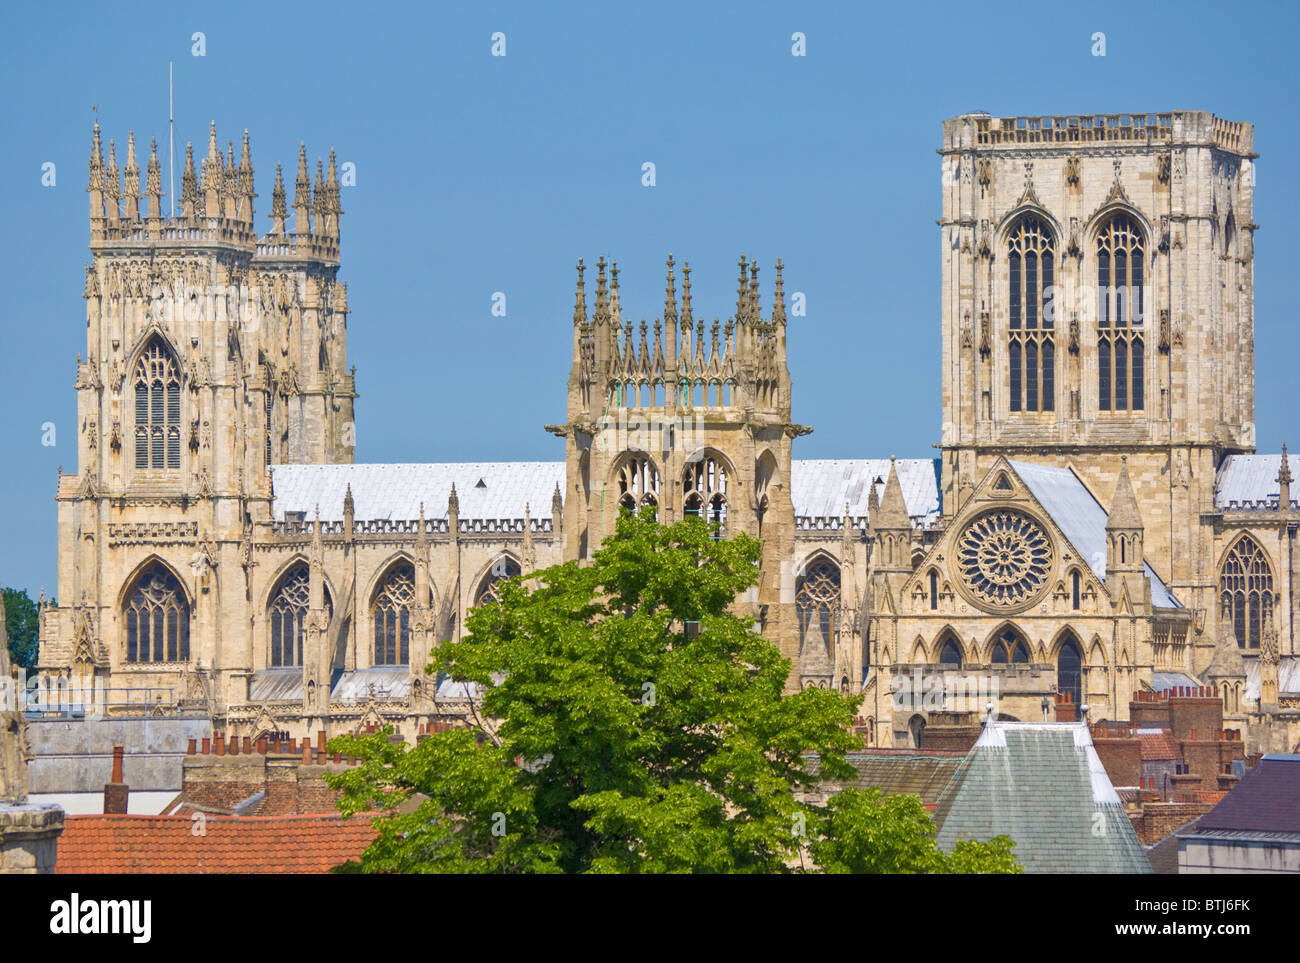 York Minster nord europa la più grande cattedrale gotica della città di York, nello Yorkshire, Inghilterra, Regno Unito, GB, Unione Europea, Europa Foto Stock